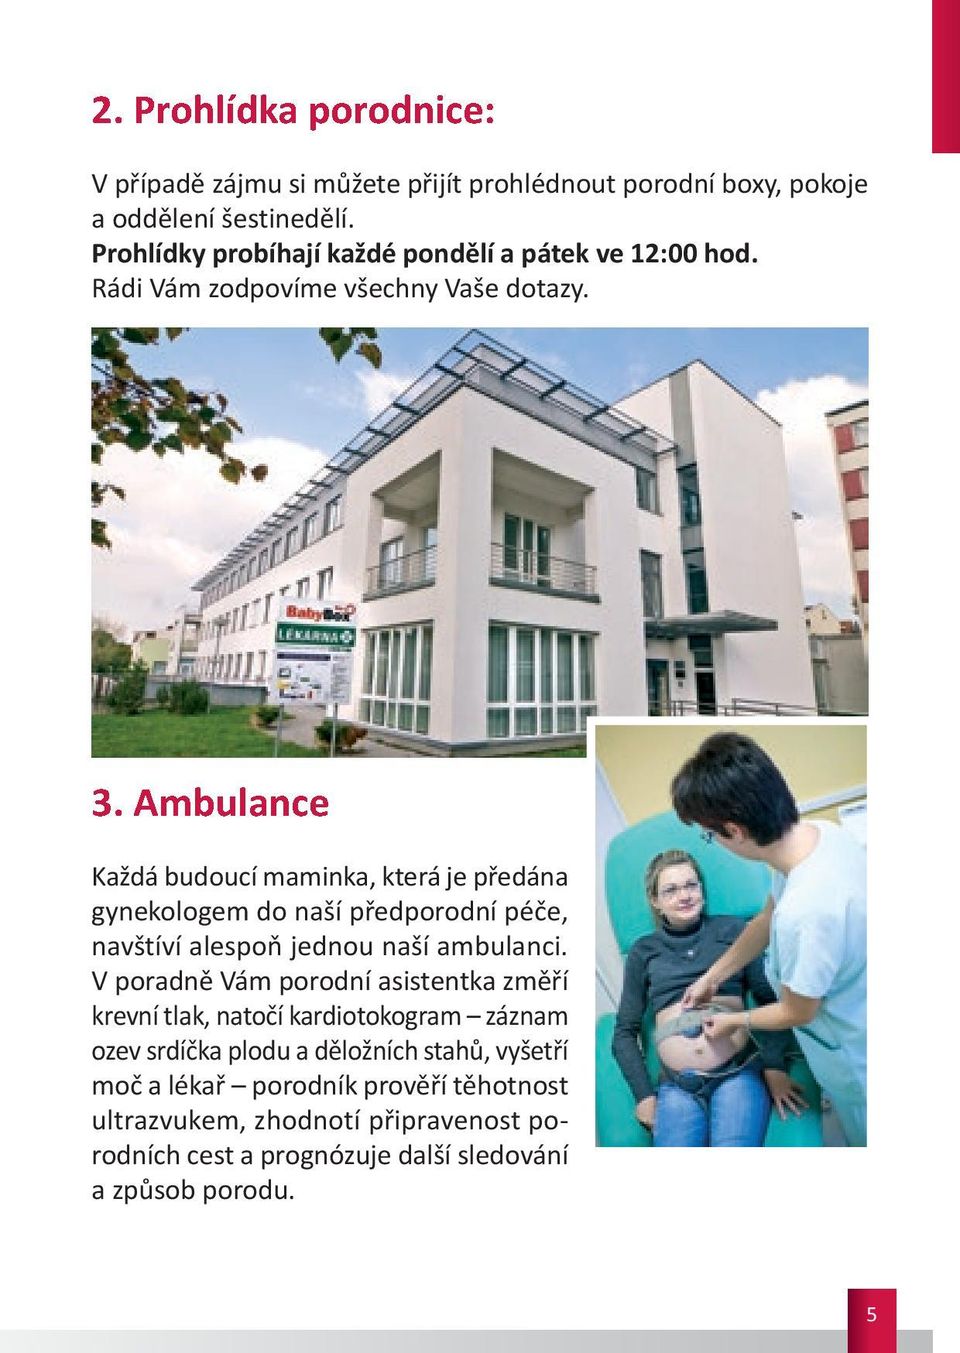 Ambulance Každá budoucí maminka, která je předána gynekologem do naší předporodní péče, navštíví alespoň jednou naší ambulanci.